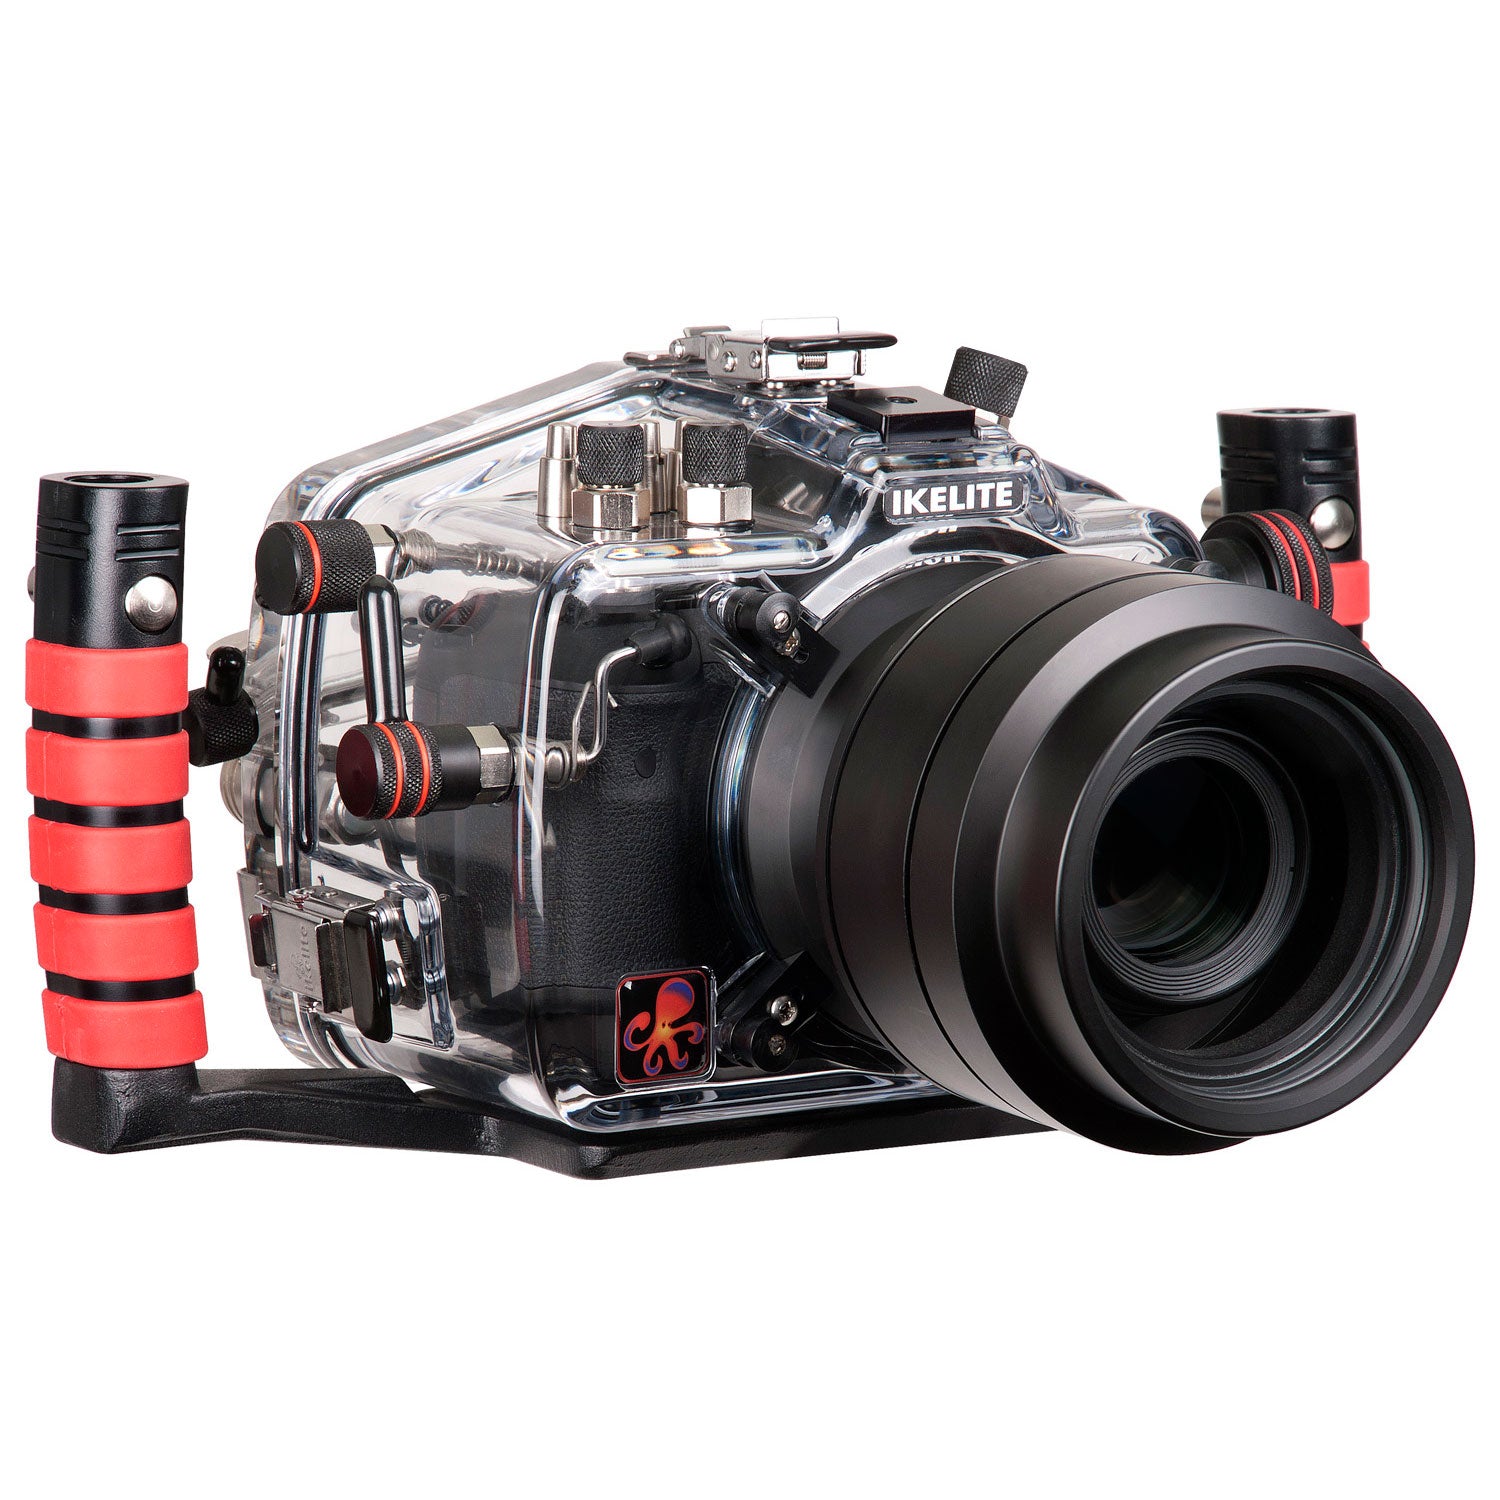 200FL Underwater TTL Housing for Canon EOS 5D Mark III DSLR